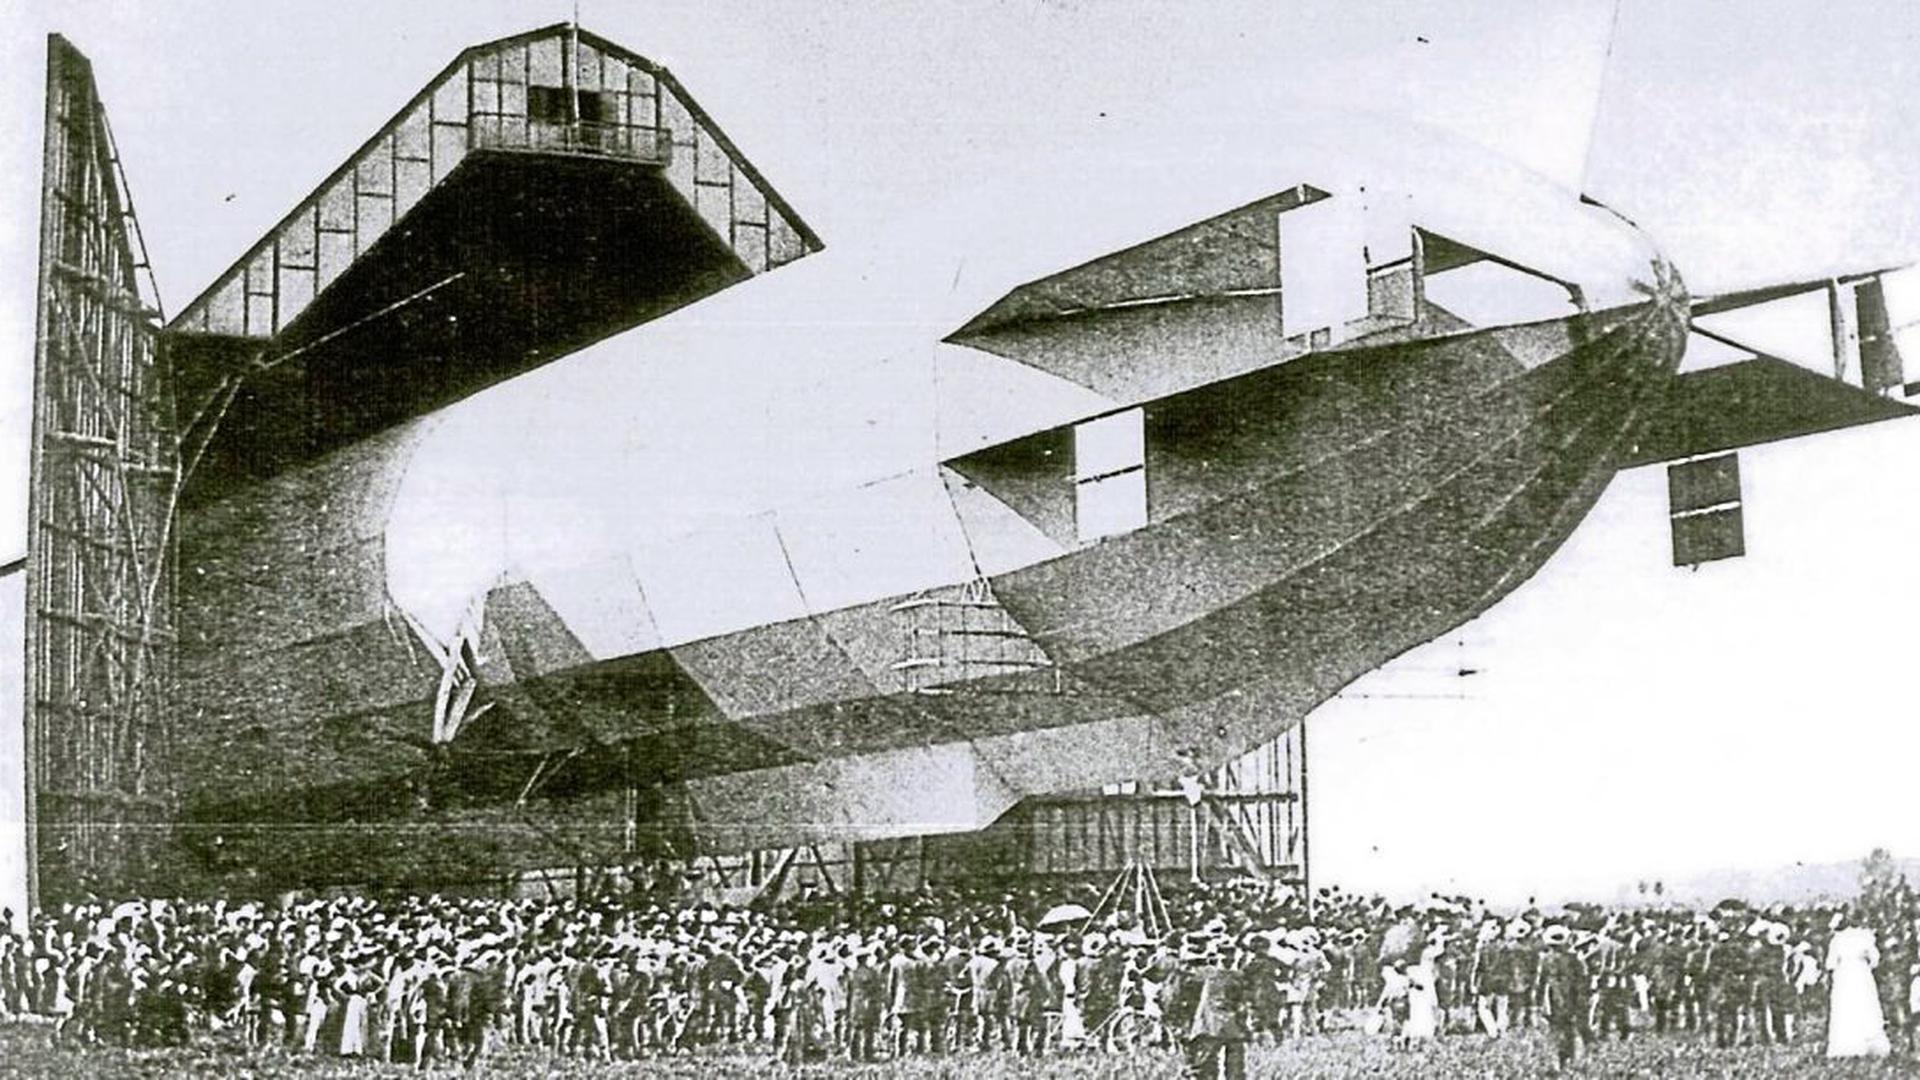 Die Schaulustigen standen dicht gedrängt: Am 21. August 1910 wurde das Luftschiff LZ 11 Viktoria Luise auf dem Flugplatz Oos bestaunt. Für die Zeppeline war auf dem Gelände eine gewaltige Luftschiffhalle gebaut worden.